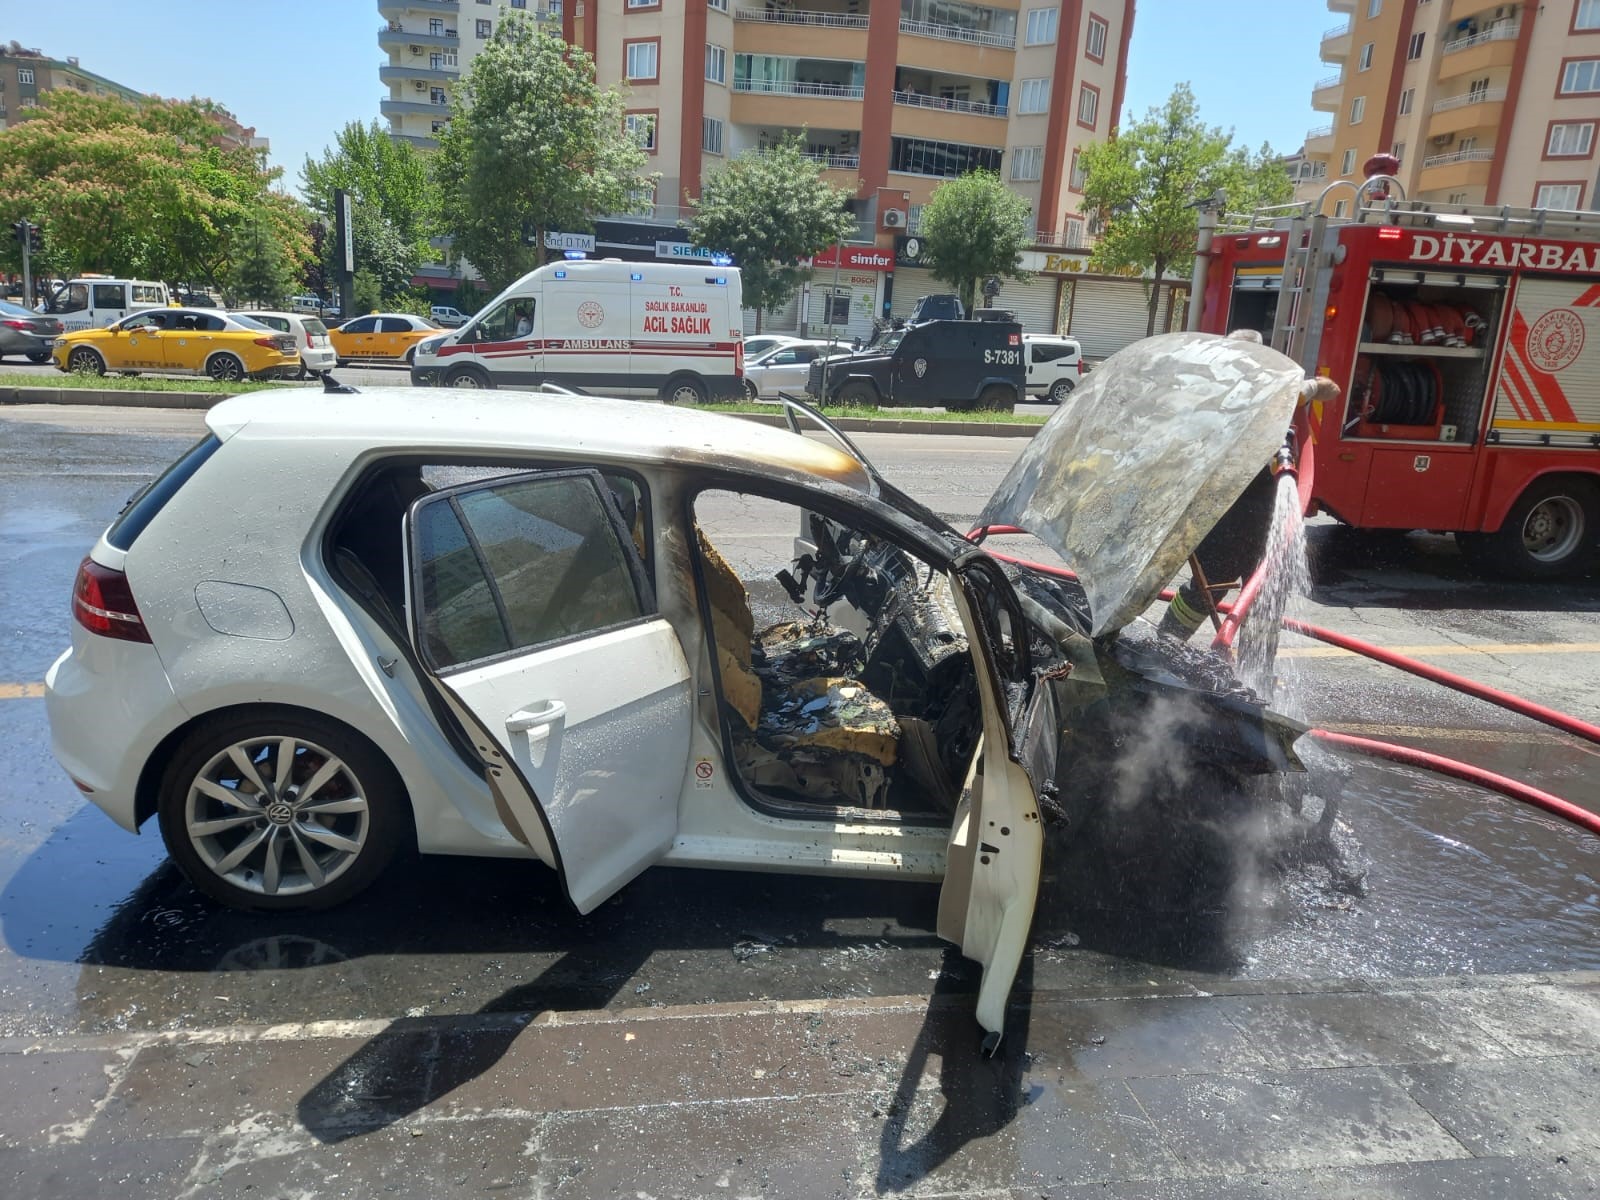 Diyarbakır’da sıcaklar arabaları bile yakıyor!